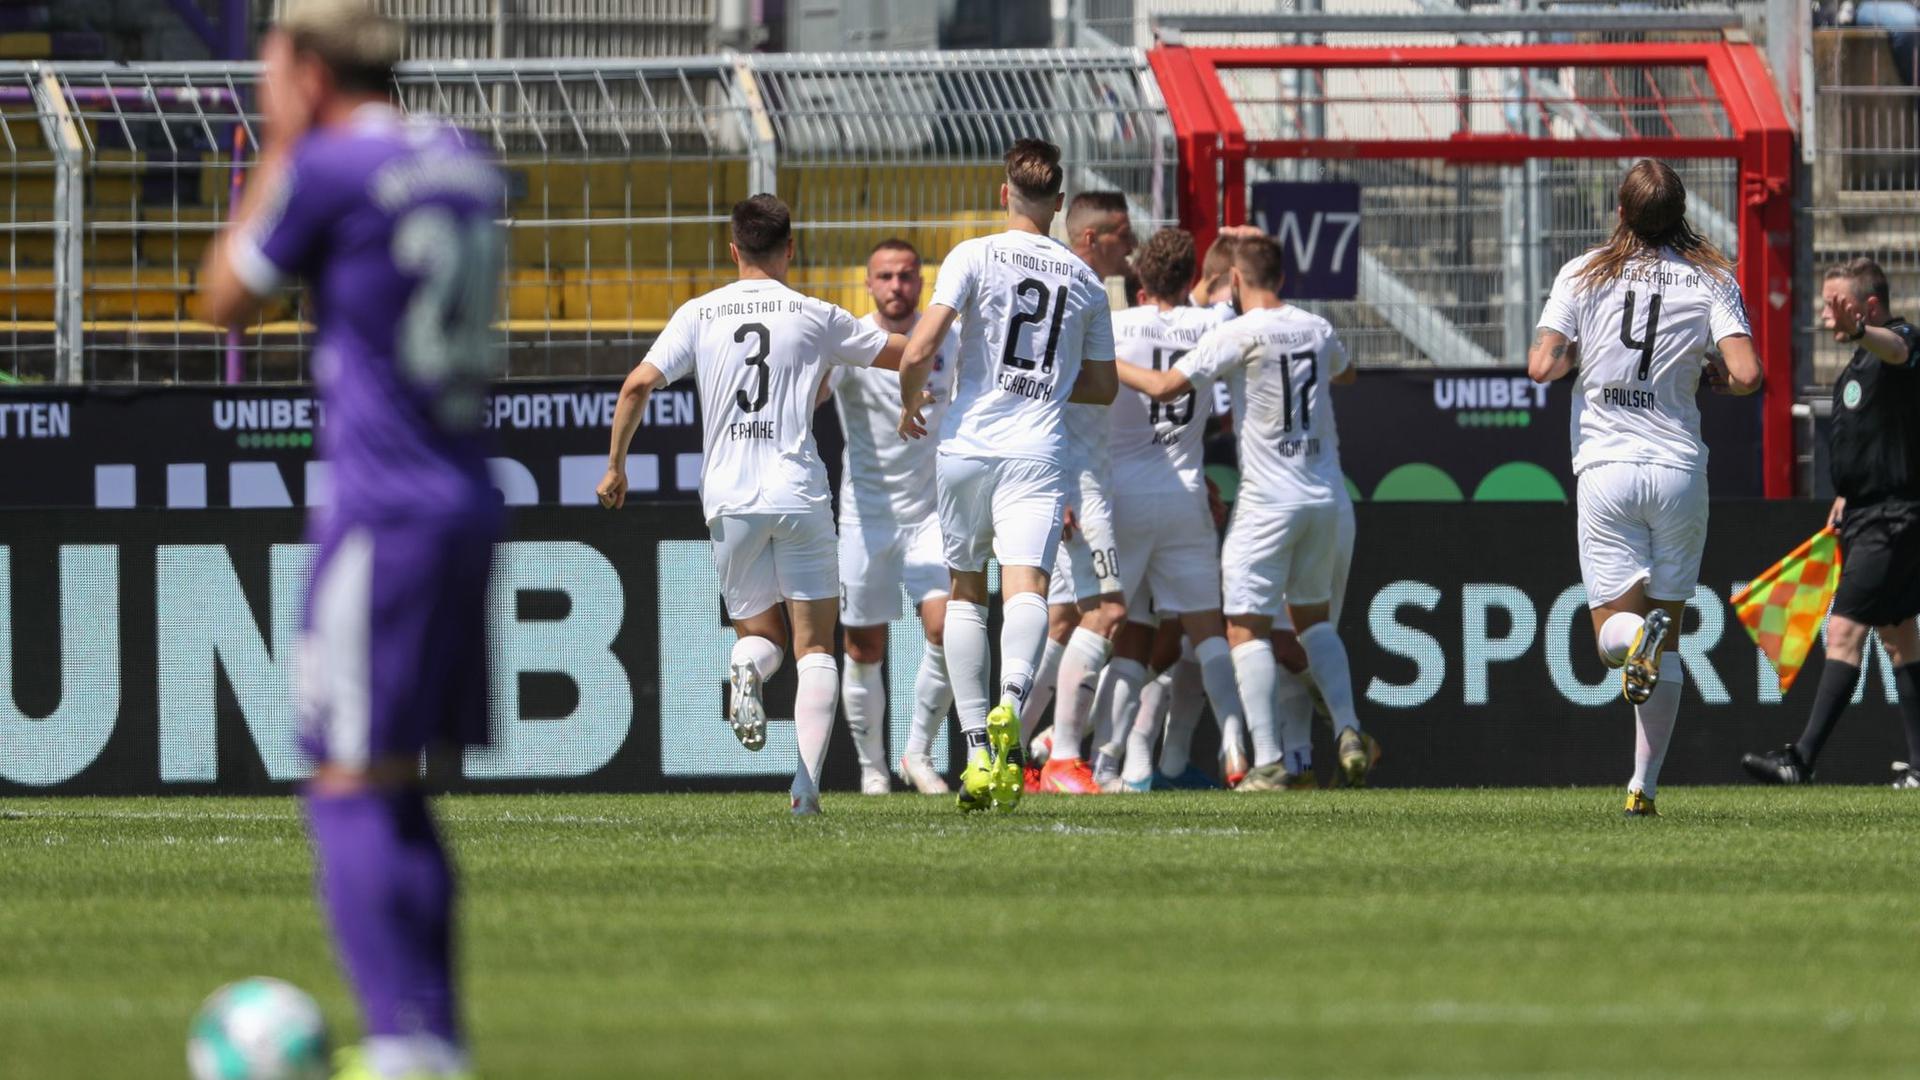 Ingolstadts Torschütze Bilbija (verdeckt) feiert seinen Treffer zum 1:2 mit Dominik Franke (l-r), Tobias Schröck und Björn Paulsen.